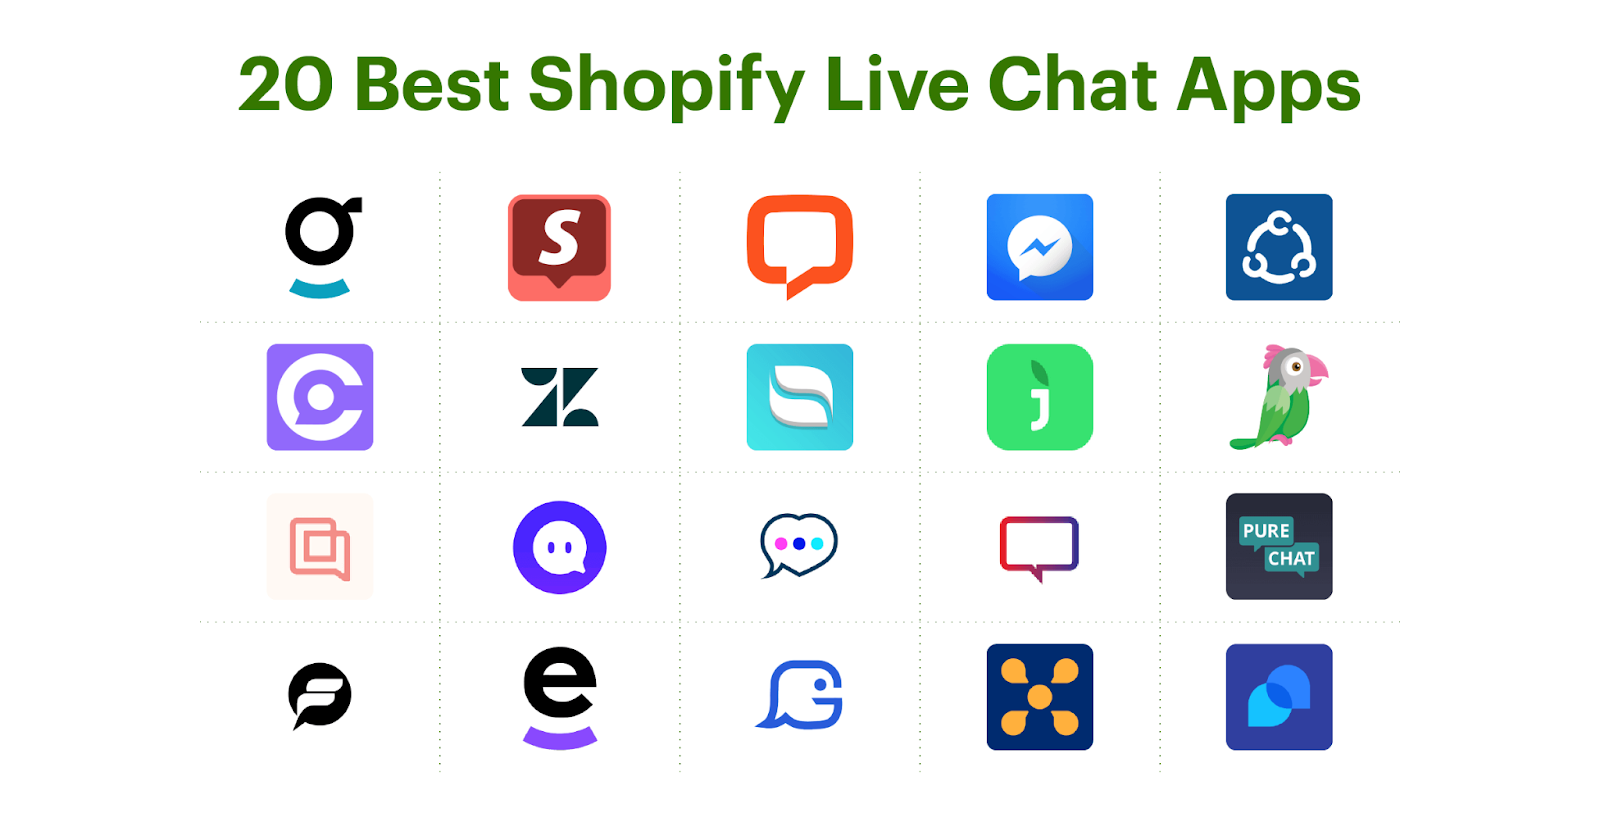 Las 20 mejores aplicaciones de chat en vivo de Shopify